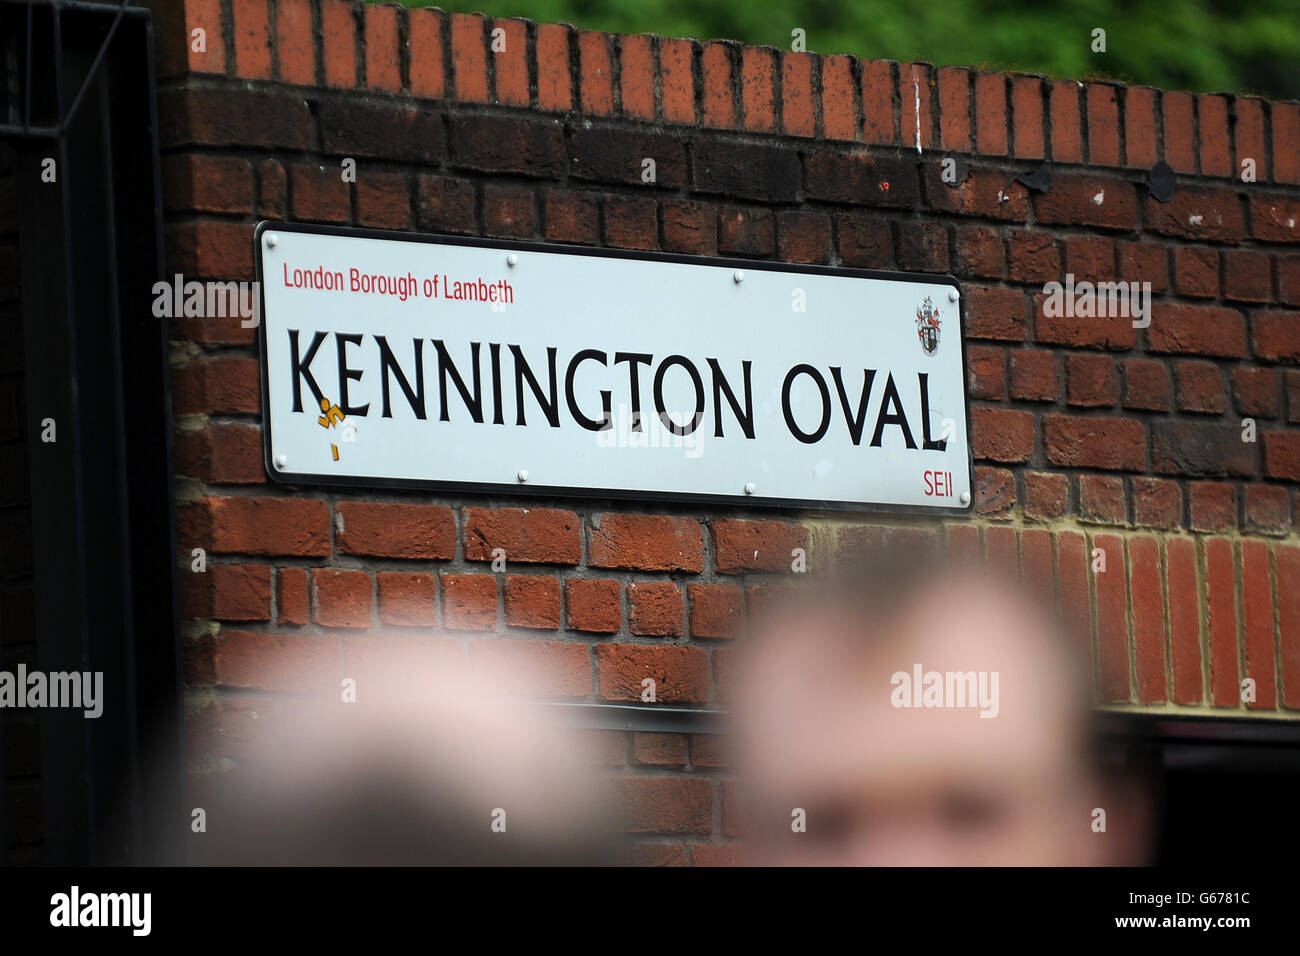 Cricket - First NatWest T20 - Angleterre / Nouvelle-Zélande - The Kia Oval. Panneau de rue Kennington Oval Banque D'Images